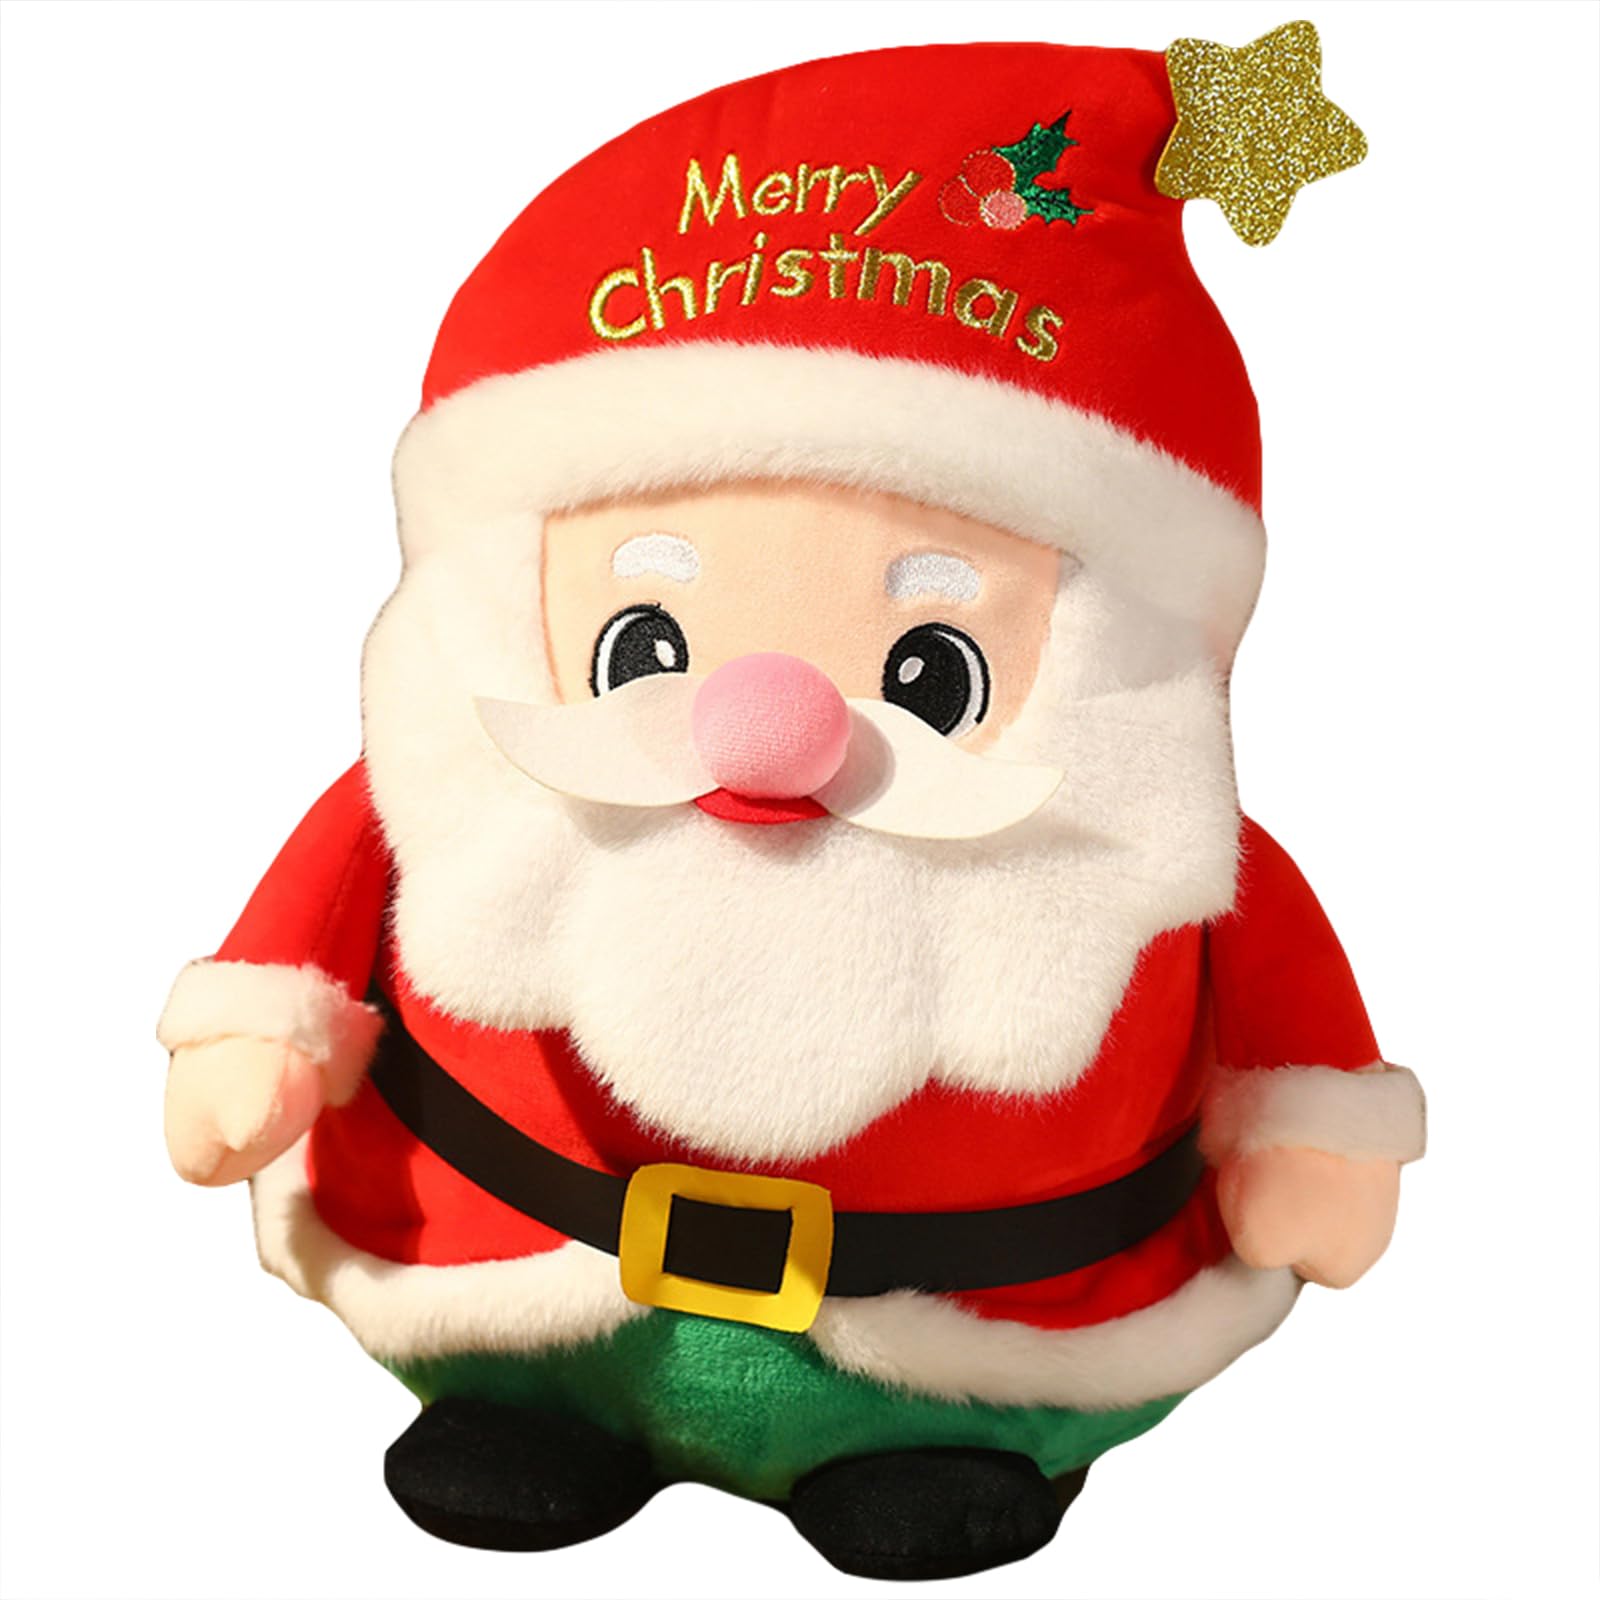 EXQUILEG Weihnachten Weihnachtsmann Plüschtier, Weihnachten Plüsch Elch, Christmas Tree Pillow, Christmas Holiday Decorations, Home Sofa Bedroom Decoration Pillow (Weihnachtsmann,34cm)